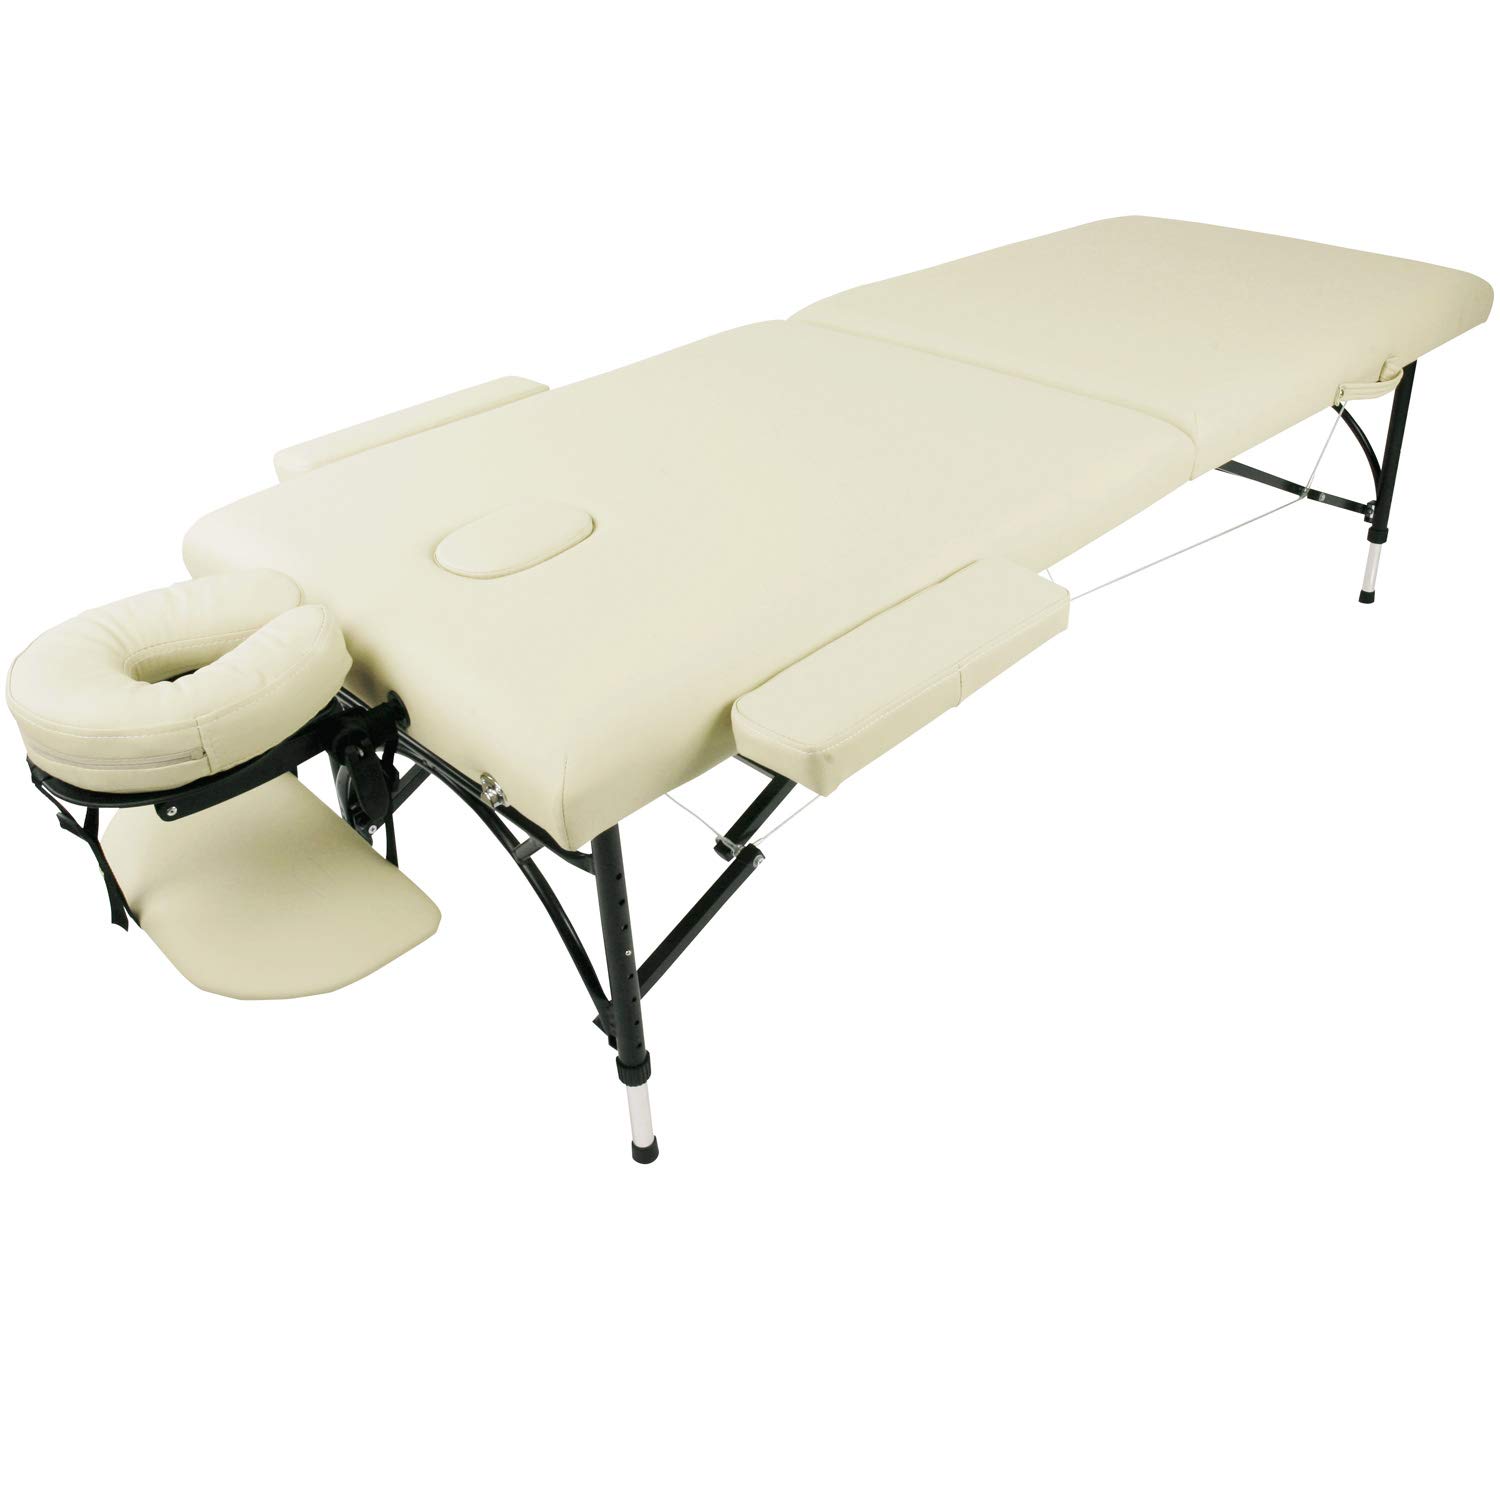 [ в аренду ] складной массажный стол легкий bed Esthe bed складной в аренду Esthe bed в аренду массажный стол 